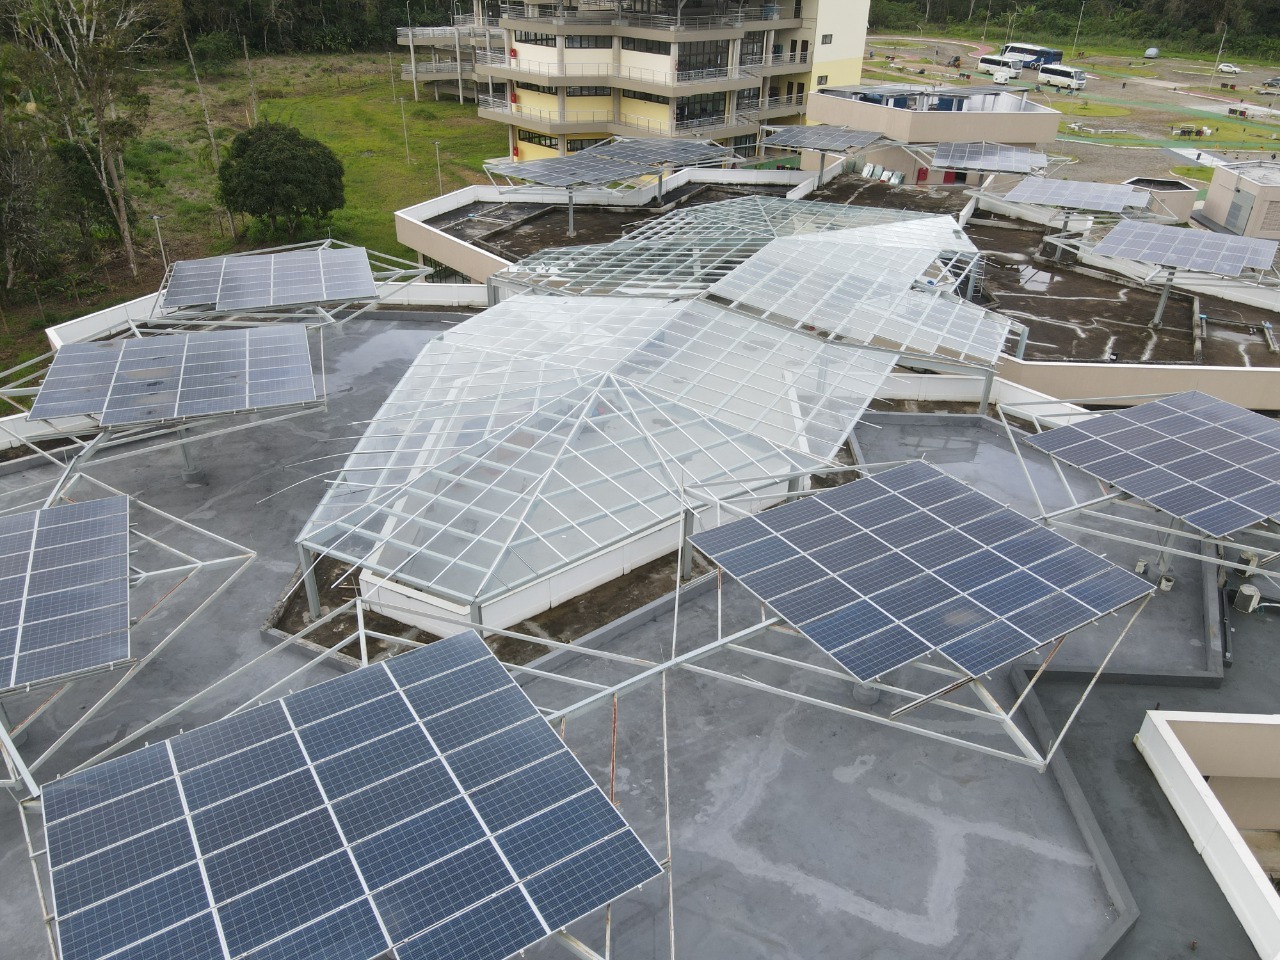 Sistema fotovoltaico do Campus Jorge Amado entra em funcionamento: geração de energia e de economia para a UFSB